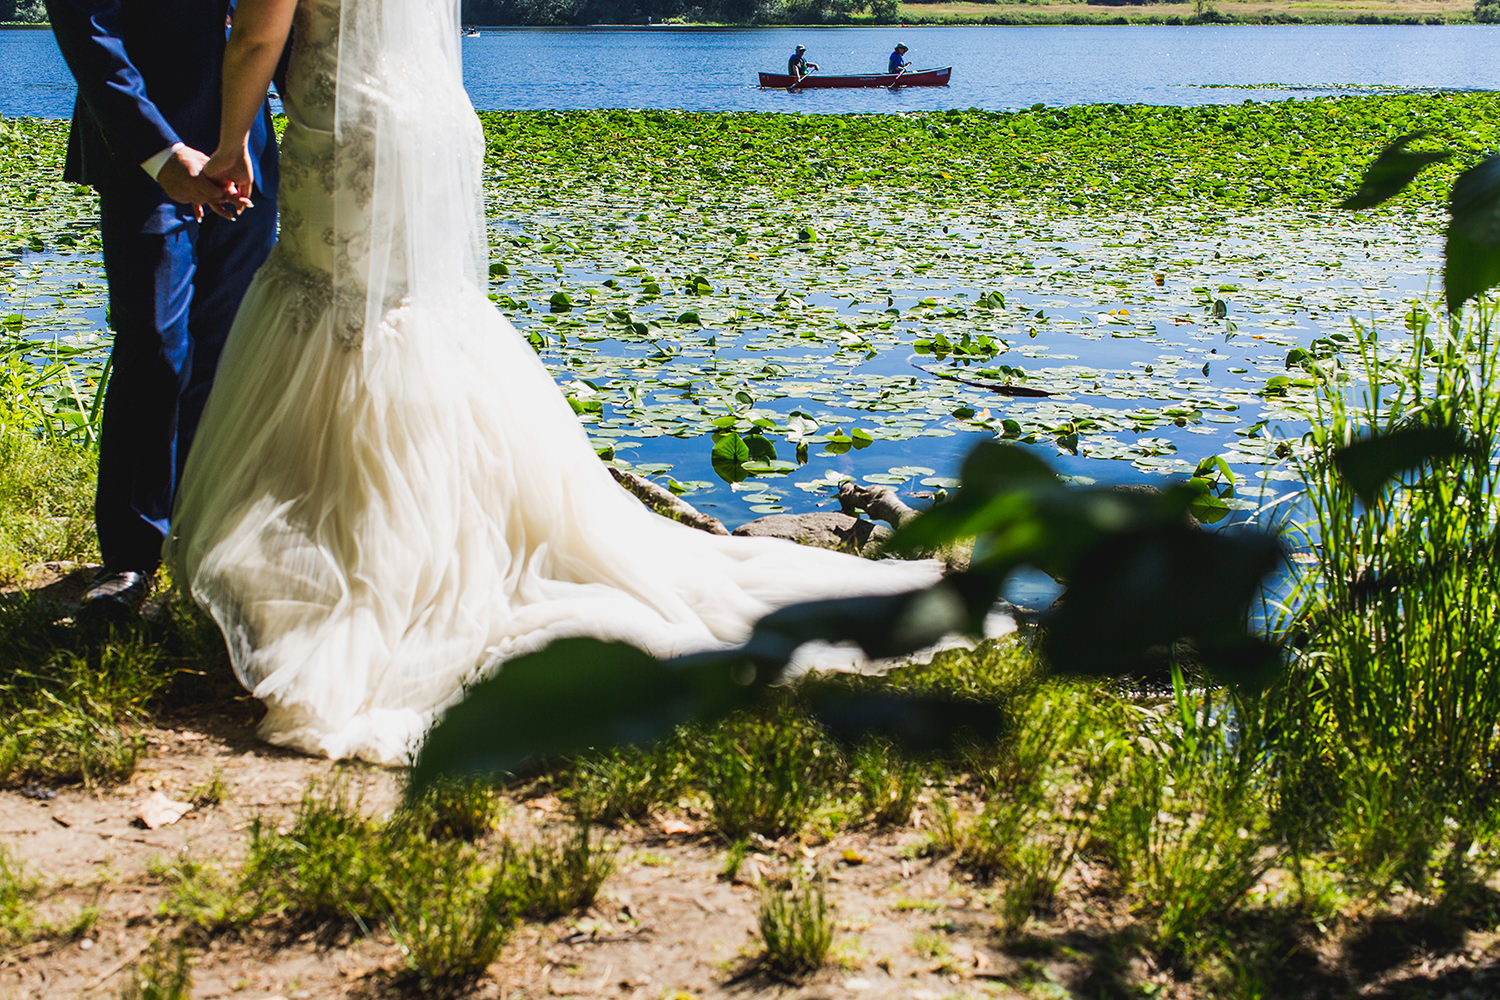 Canoers padde by bride and groom at Deer Lake Park